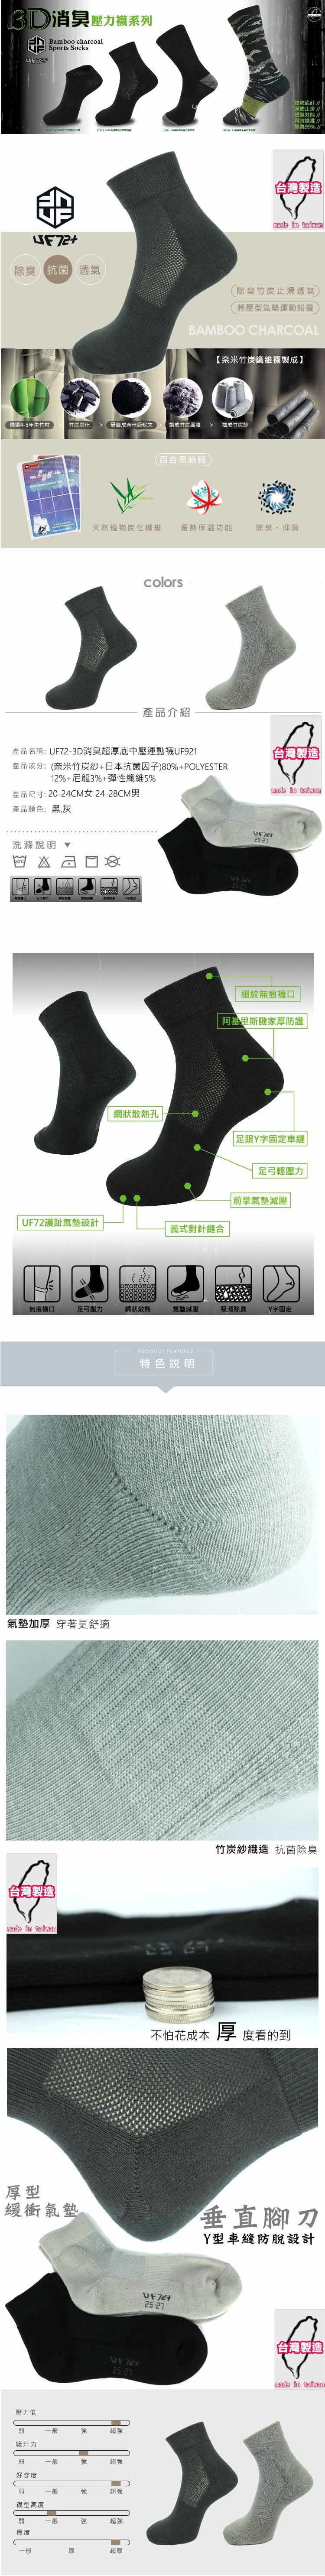 【UF72+】UF921 3D消臭超厚底中壓運動襪 1